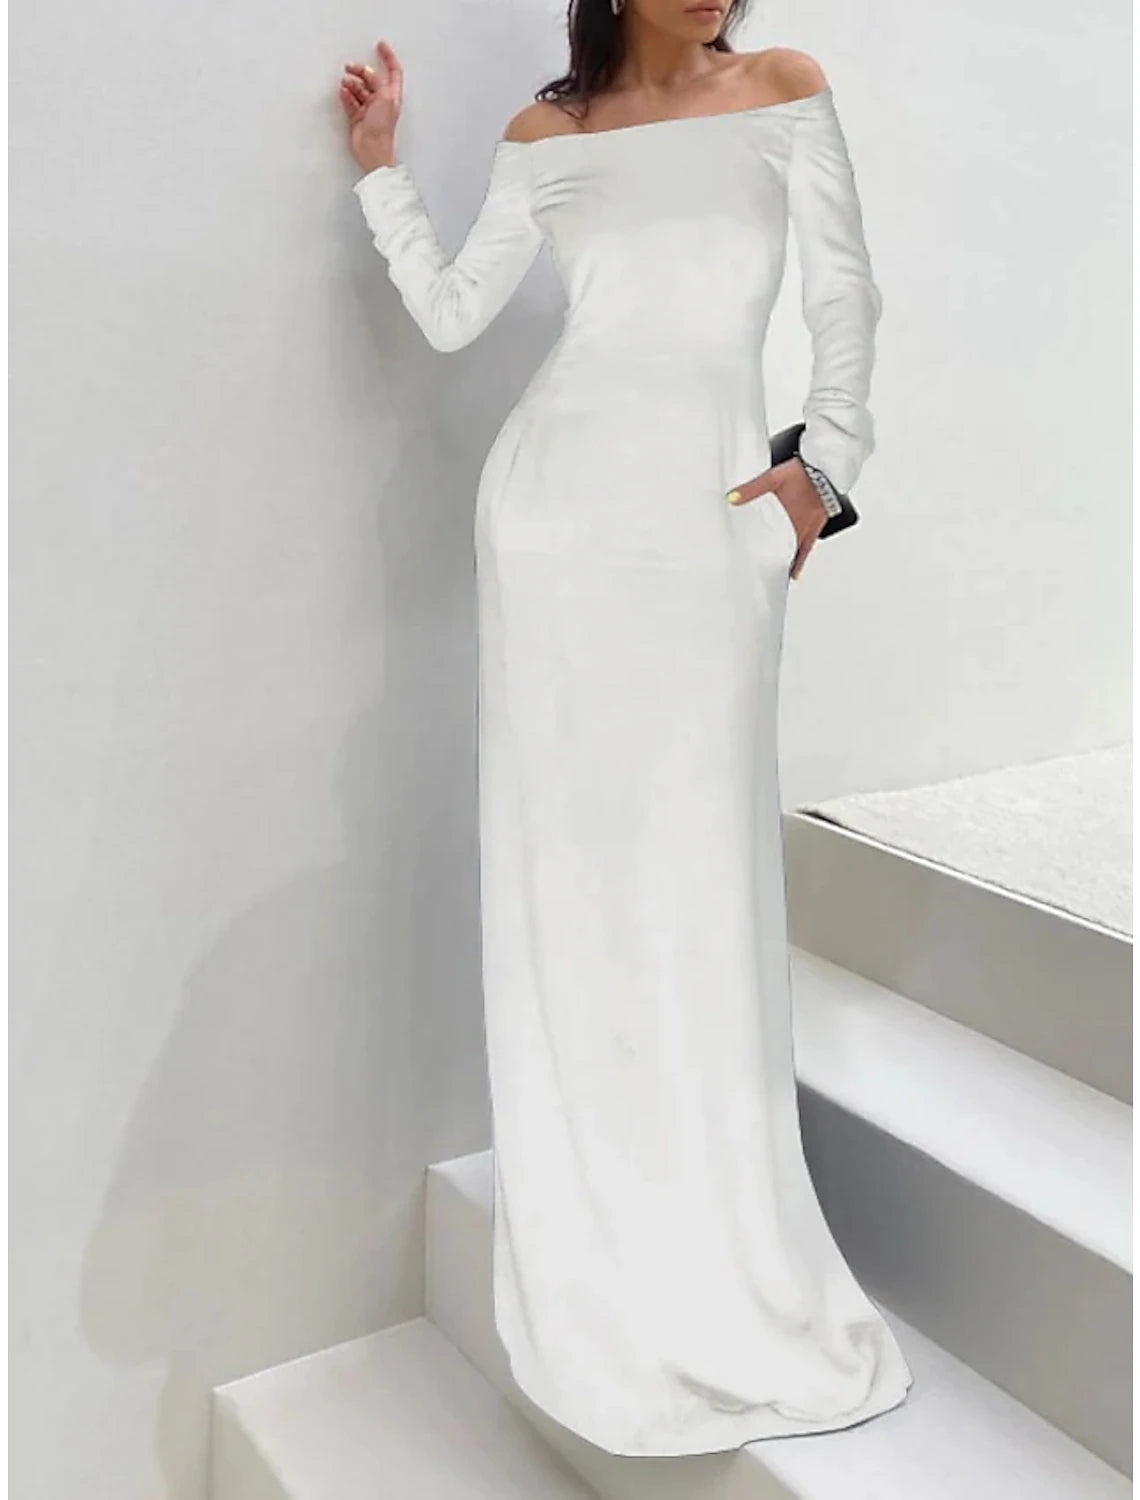 Sheath / Column Wedding Guest Dresses Elegant Dress Formal Black Tie Gala Floor Length Long Sleeve Off Shoulder Velvet with Pure Color